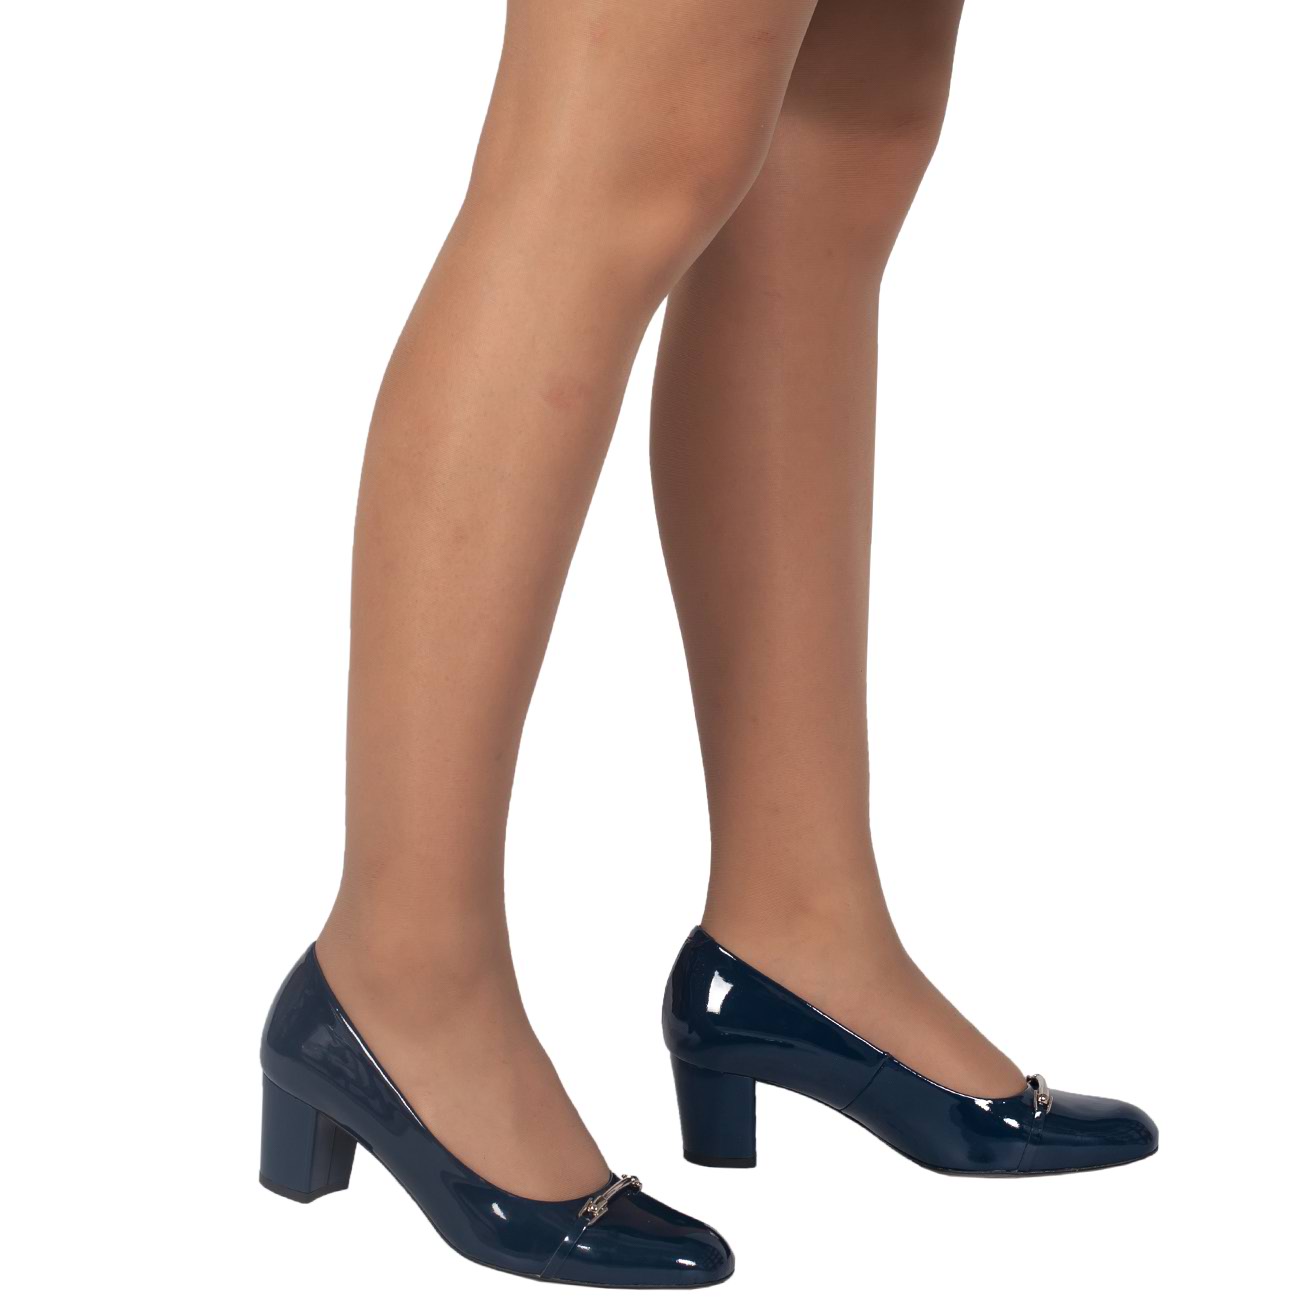 Валберис купить туфли на низком каблуке женские. Туфли женские Aubergine crakle арт. 72857/407. Туфли женские на низком каблуке на валберис. Туфли111589-5 TFS. Туфли на невысоком каблуке.